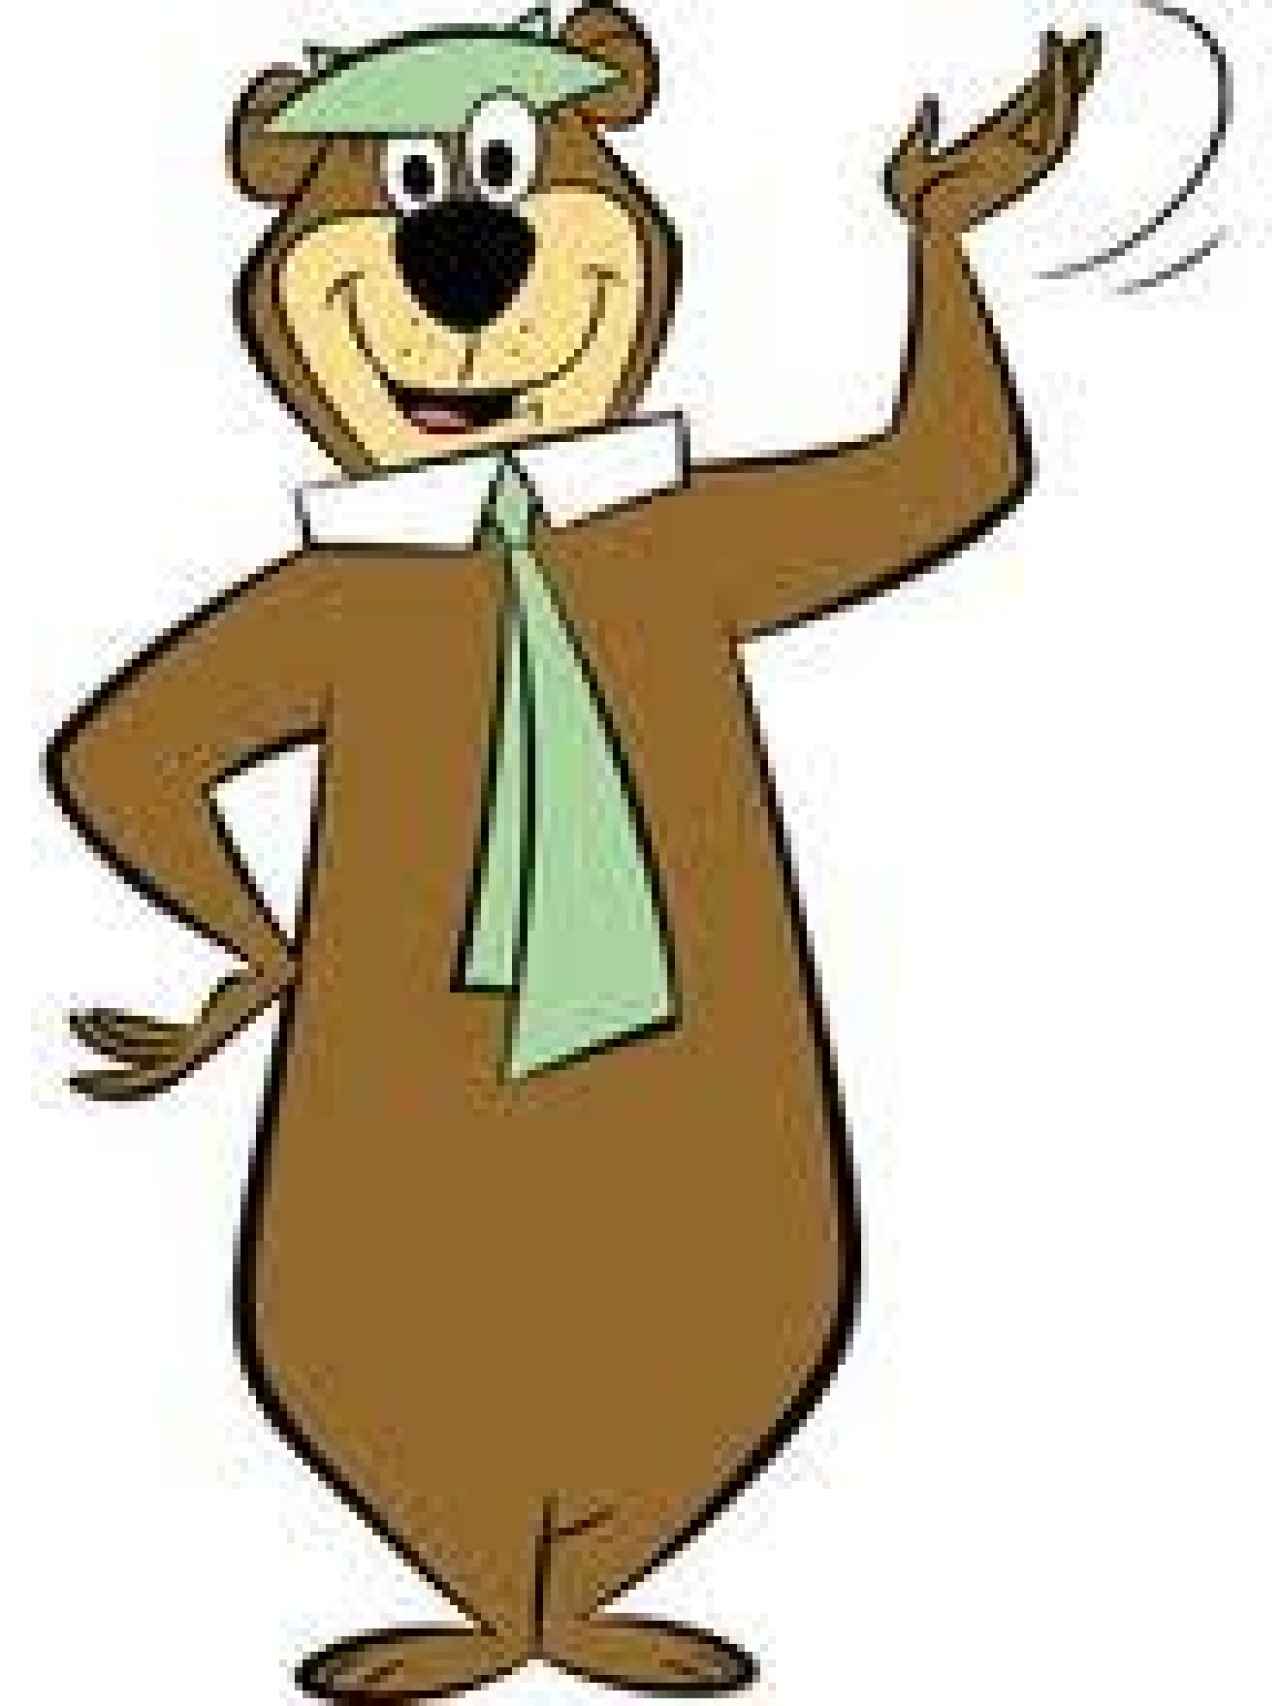 El oso Yogui, personaje de ficción de dibujos animados.